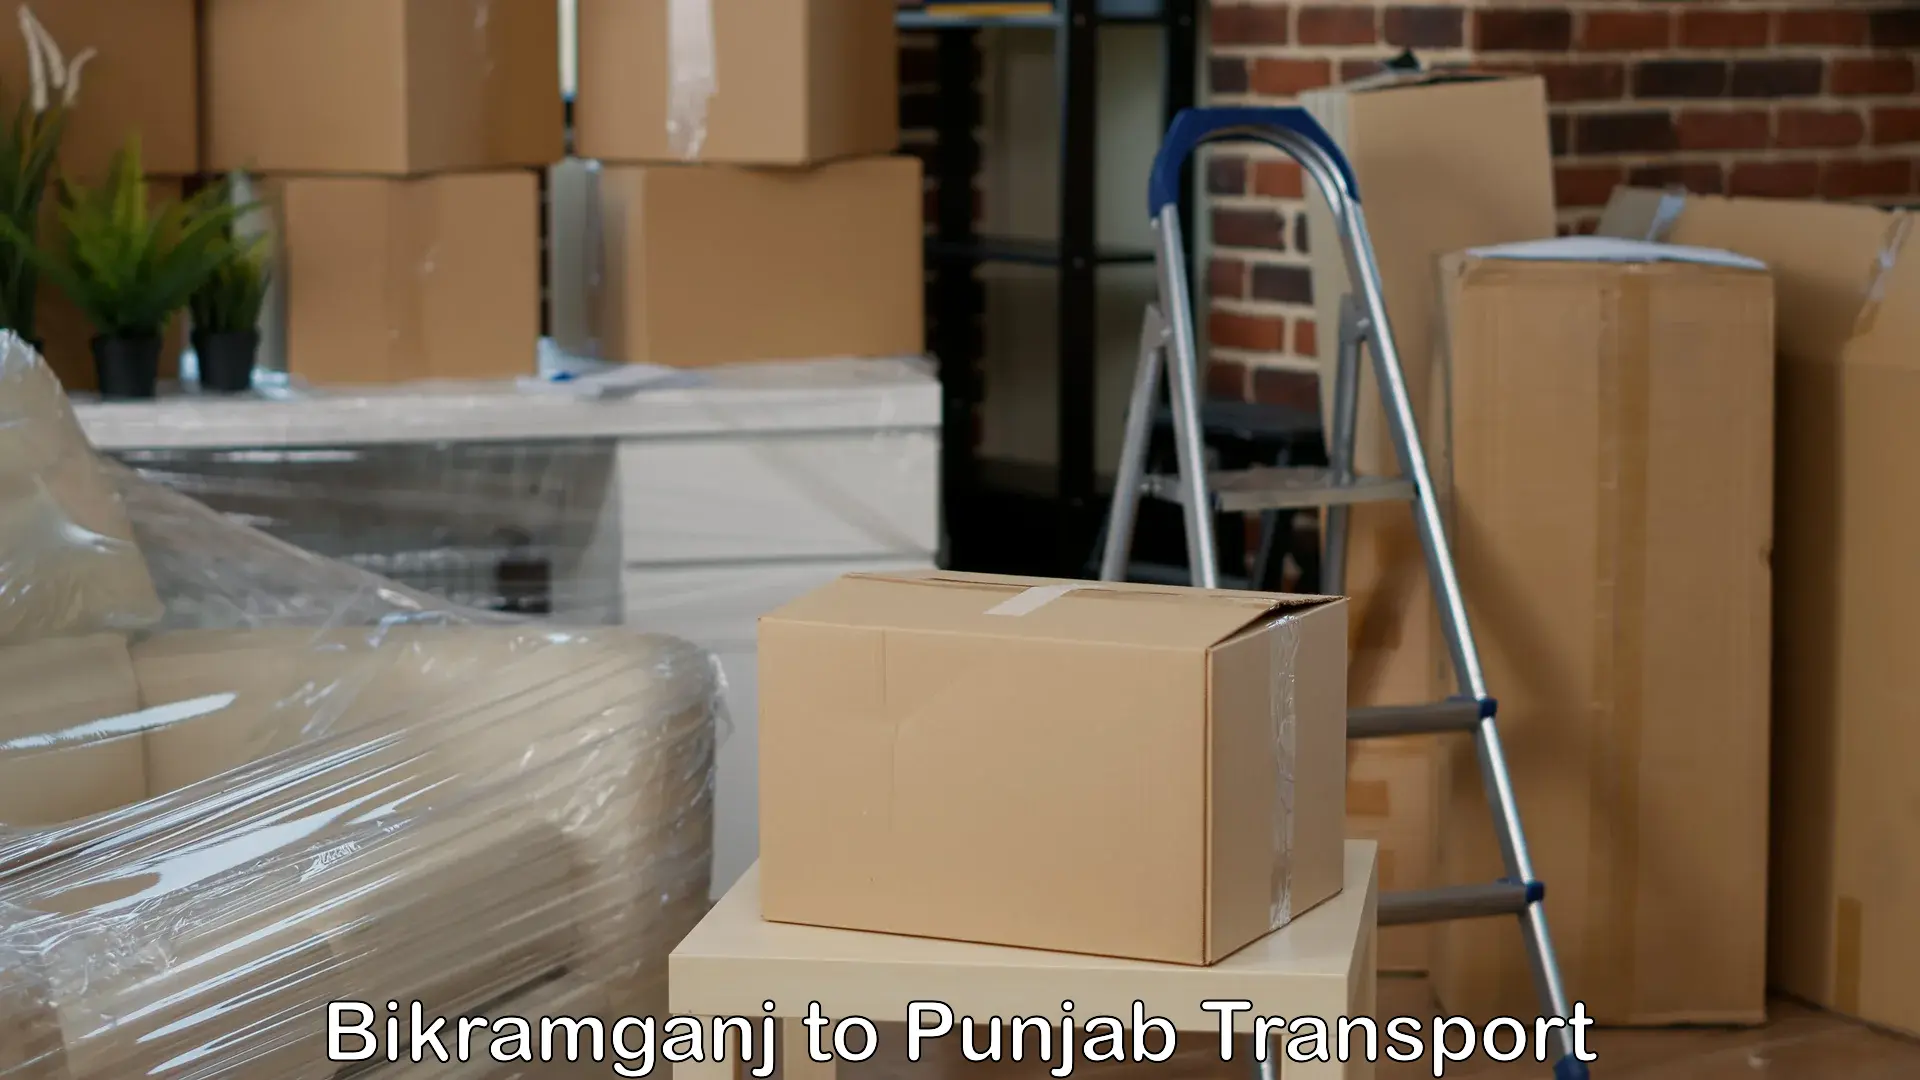 Part load transport service in India Bikramganj to Punjab